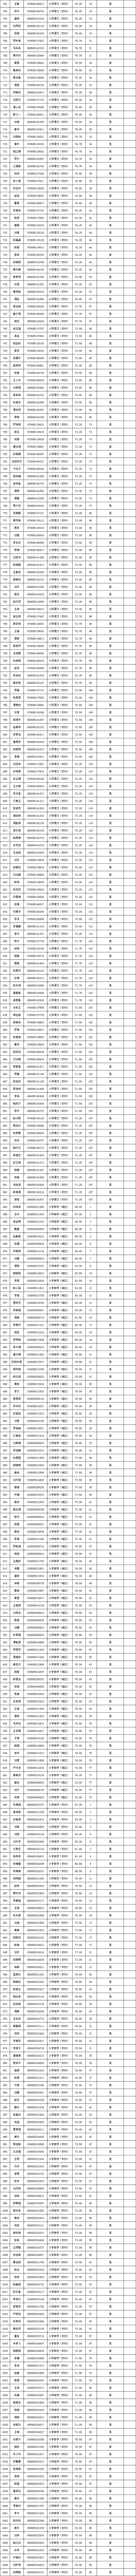 2022年长沙县公开招聘（选调）教师入围试教（面试、专业技能测试）人员名单公示(图5)